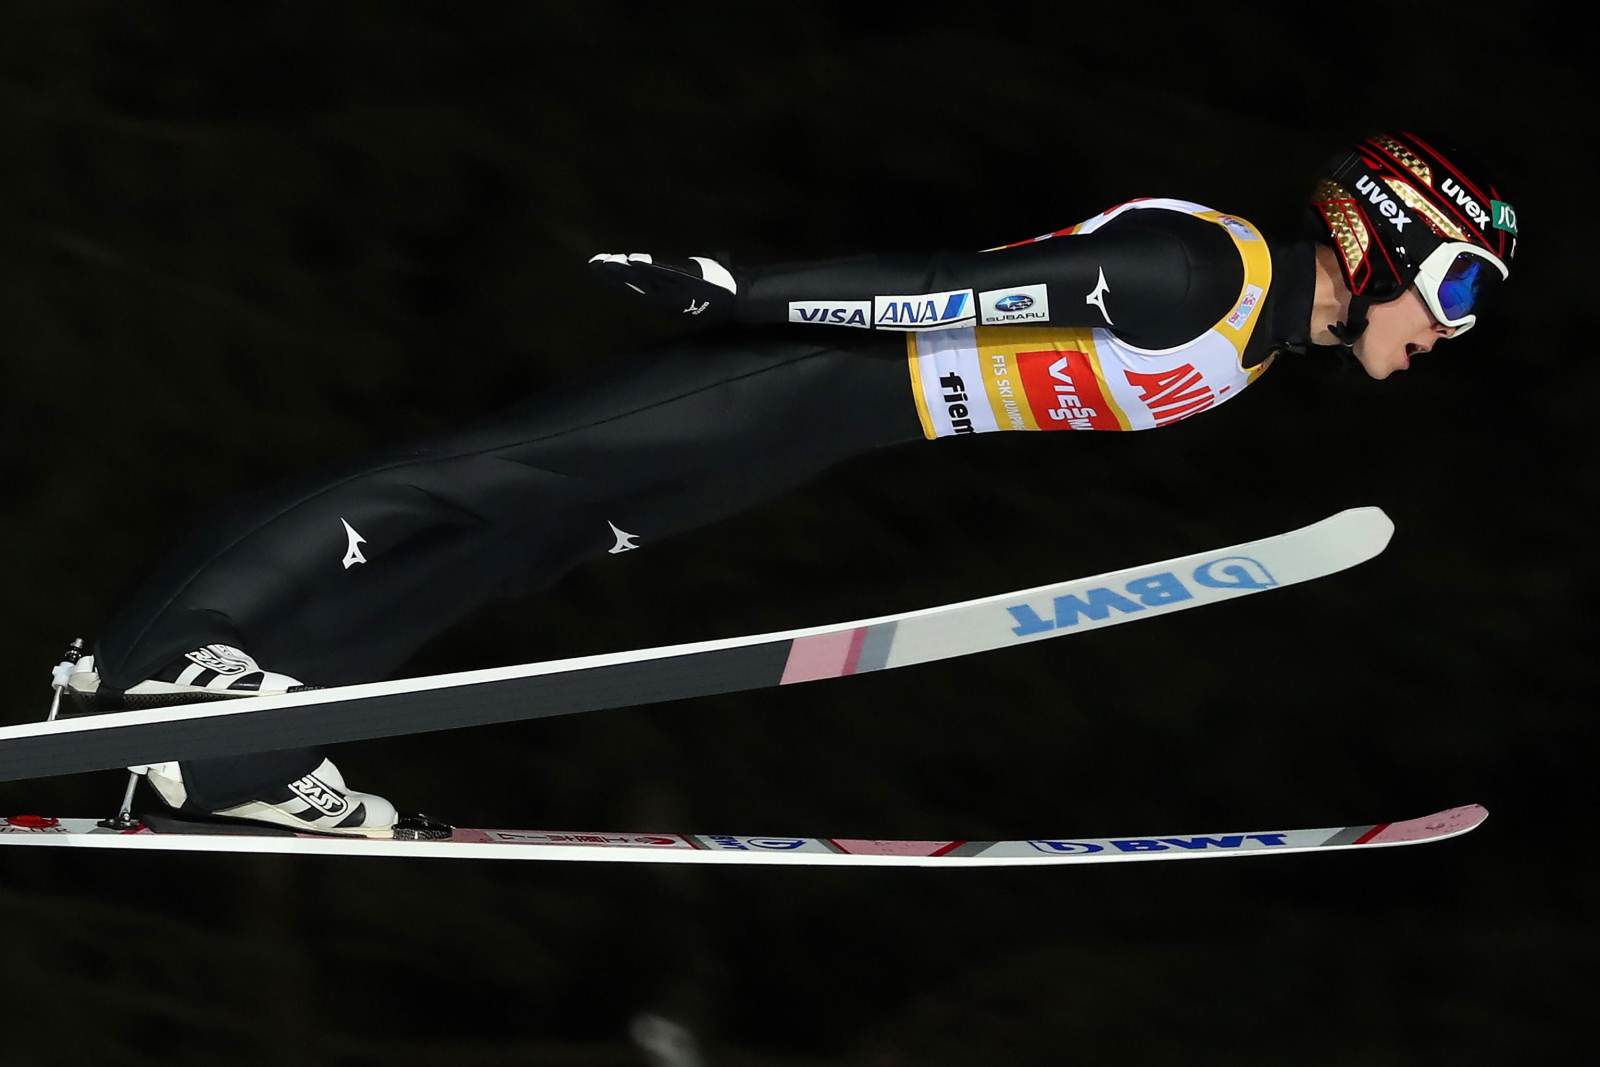 Ryoyu Kobayashi - zwycięzca kwalifikacji przed konkursem Pucharu Świata w skokach narciarskich we włoskim Predazzo. Fot. PAP/EPA/ANDREA SOLERO